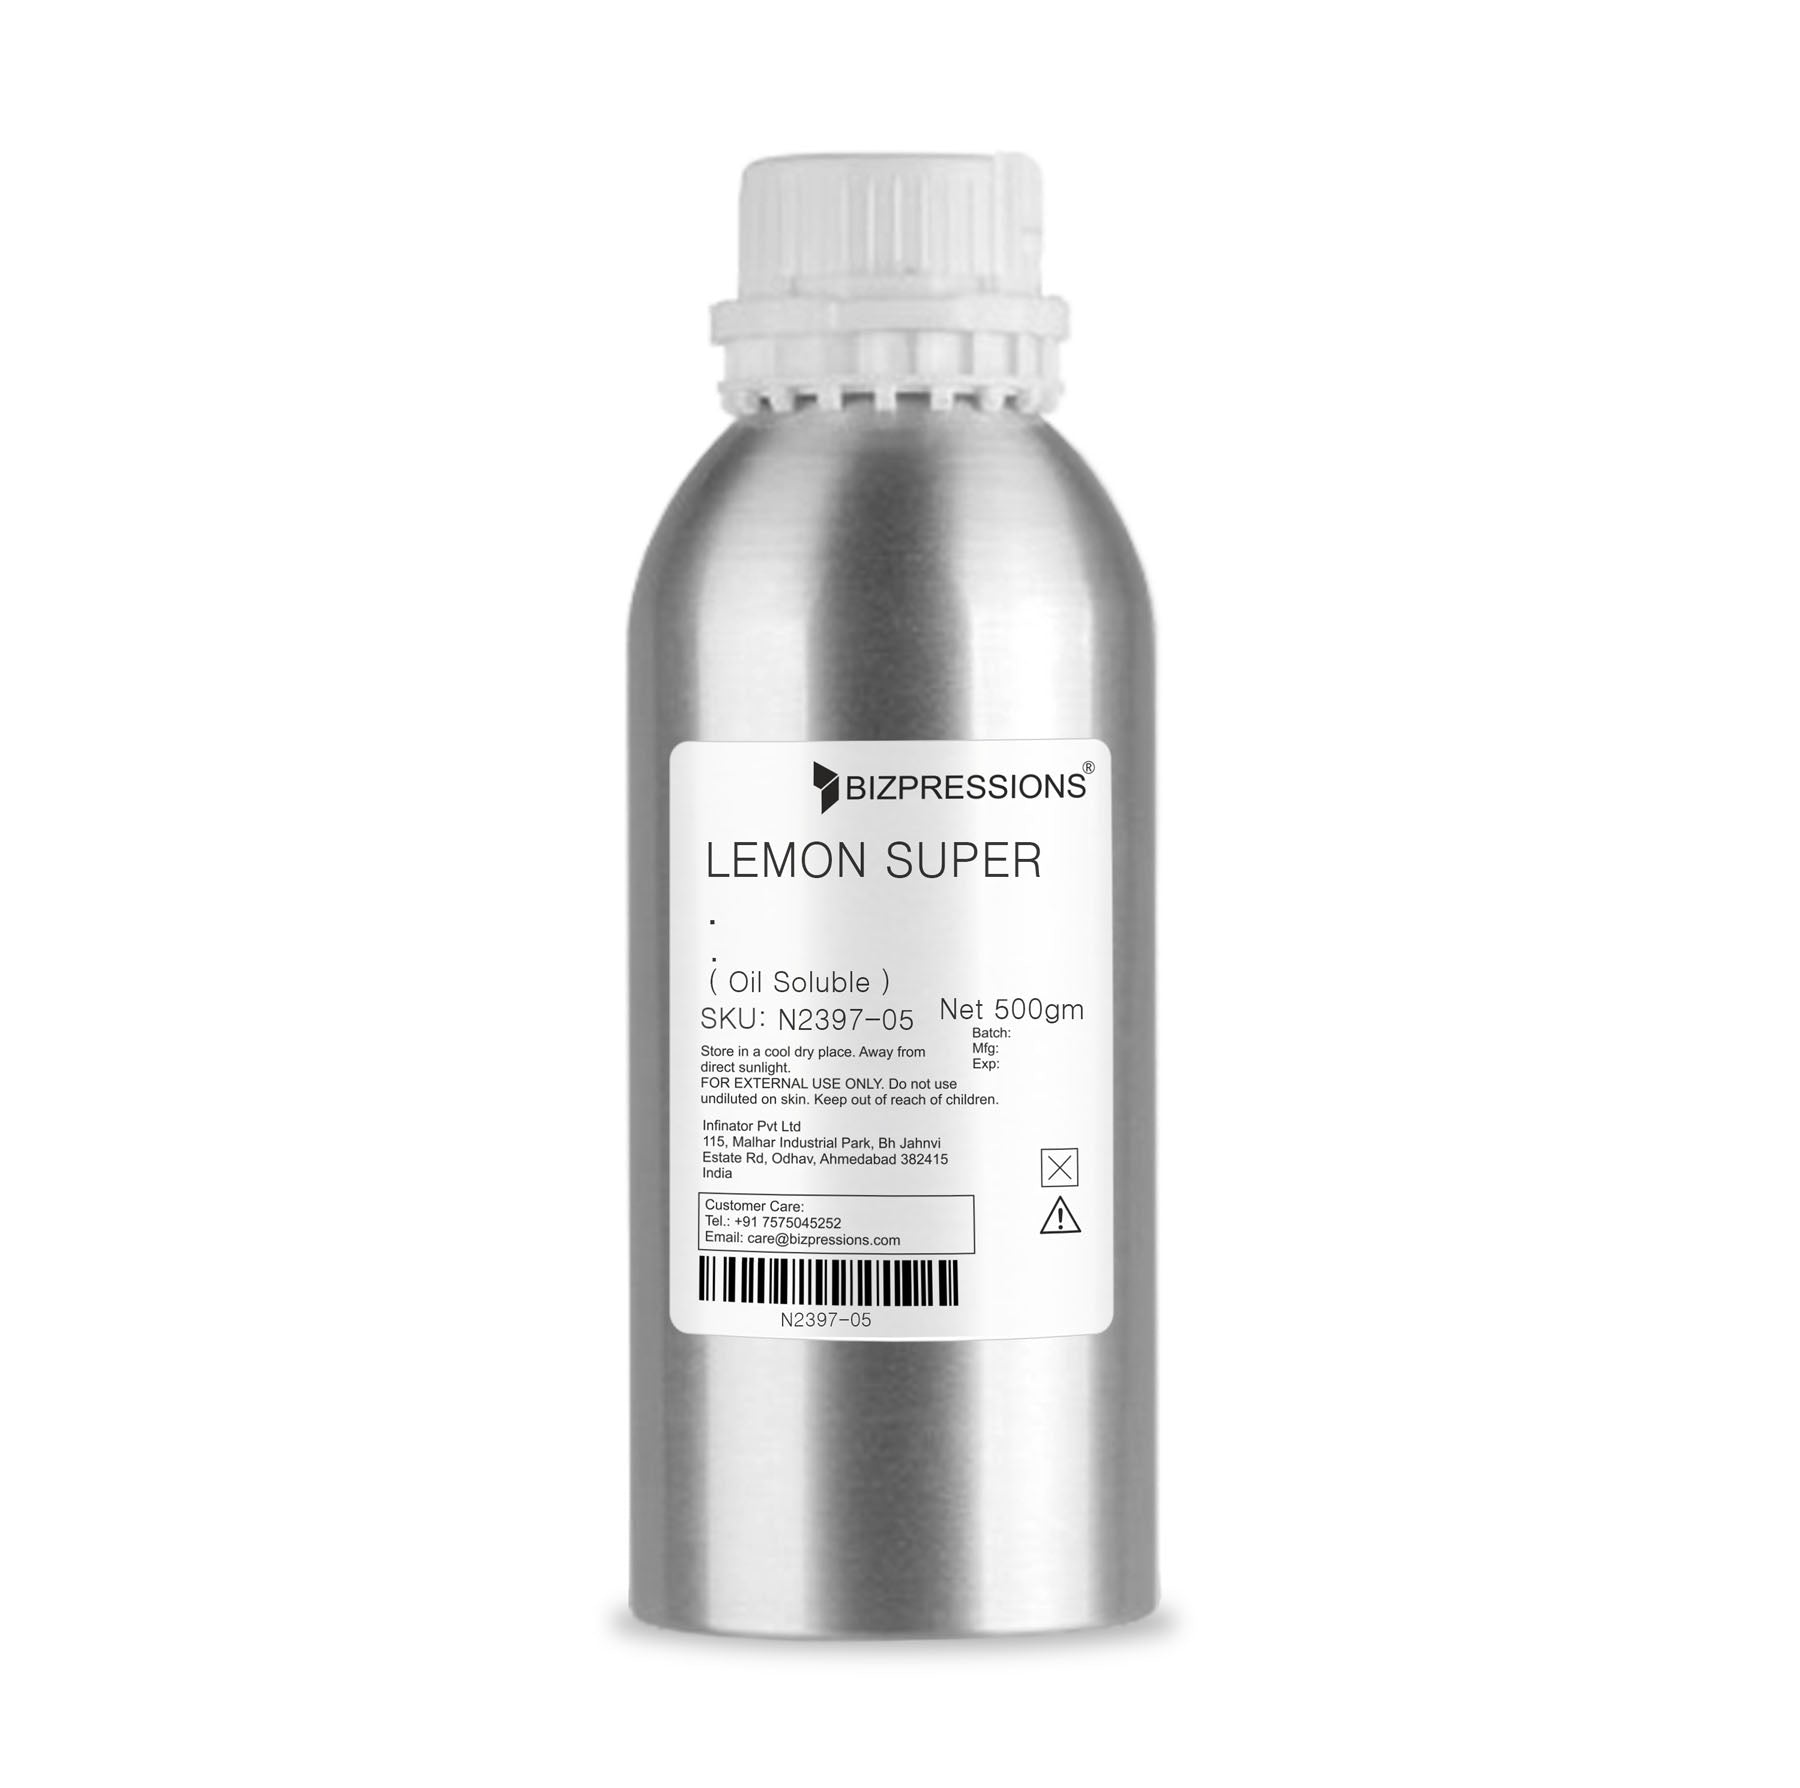 LEMON SUPER - Fragrance ( Oil Soluble ) - 500 gm